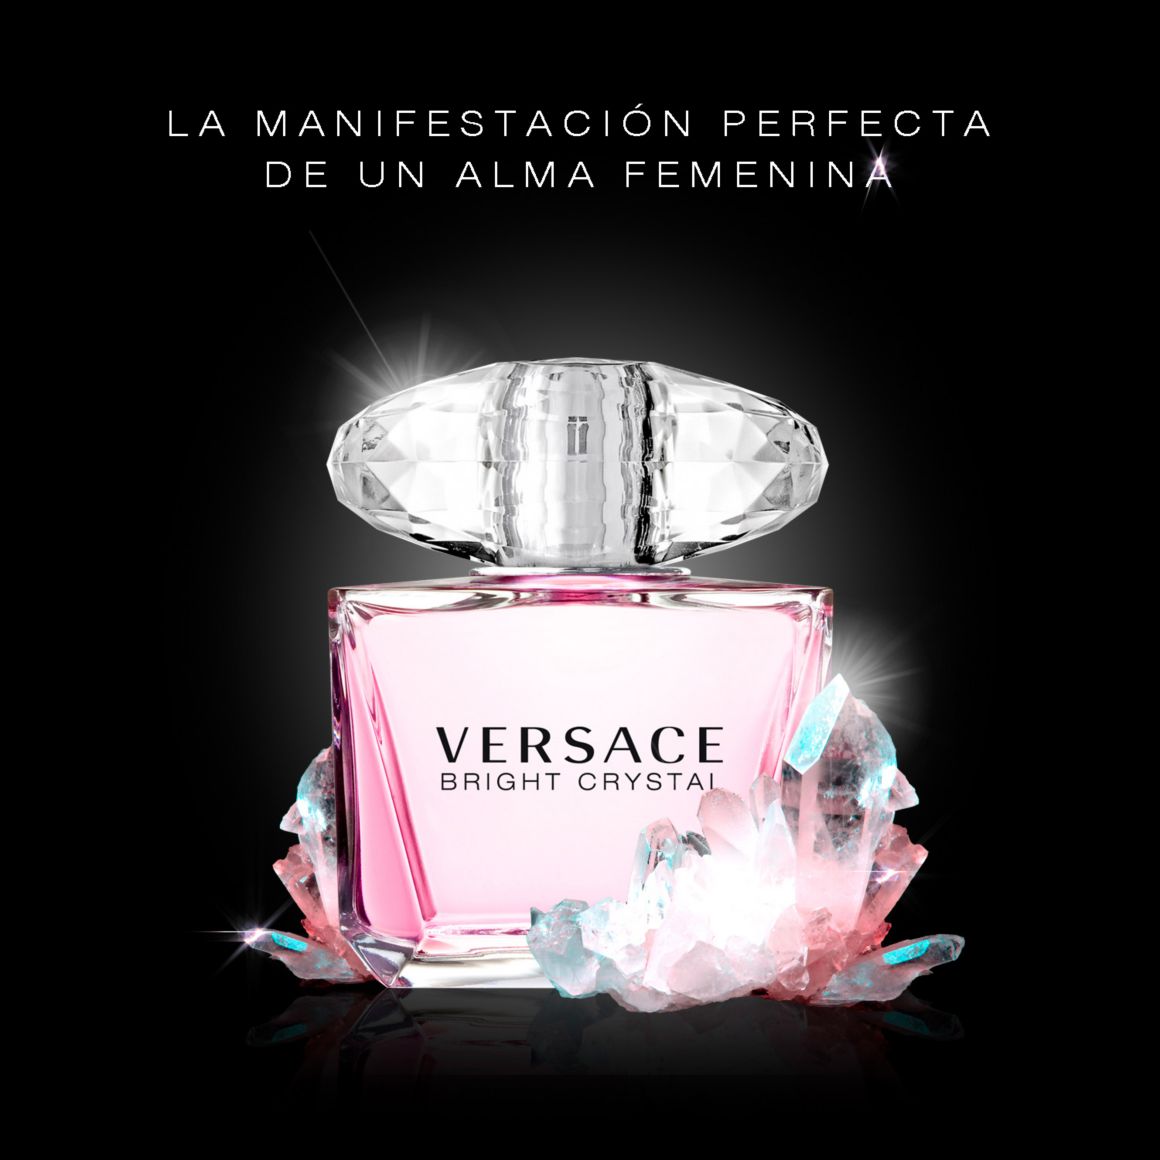 Perfume, Fragancia, Aroma, Versace, VERSACE, Fragancia Versace, Bright,Crystal, Bright Crystal, Rosado, Rosa, Fragancia Rosada, Frase